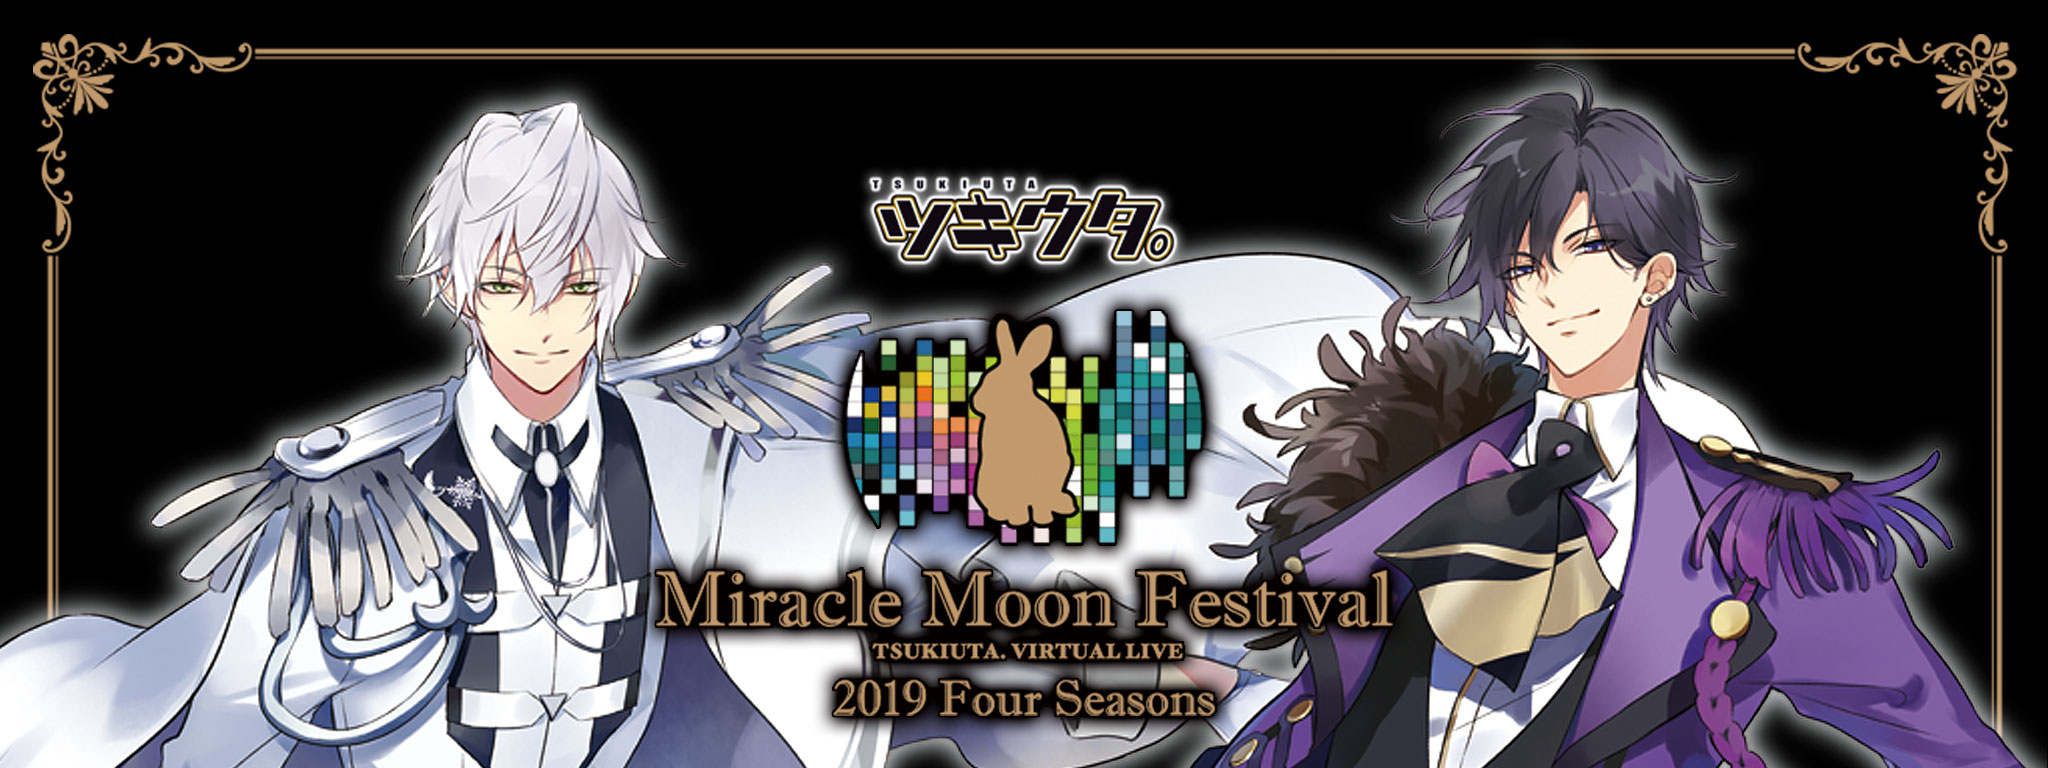 ツキウタムーンフェス Blu-ray Miracle Moon Festival - その他